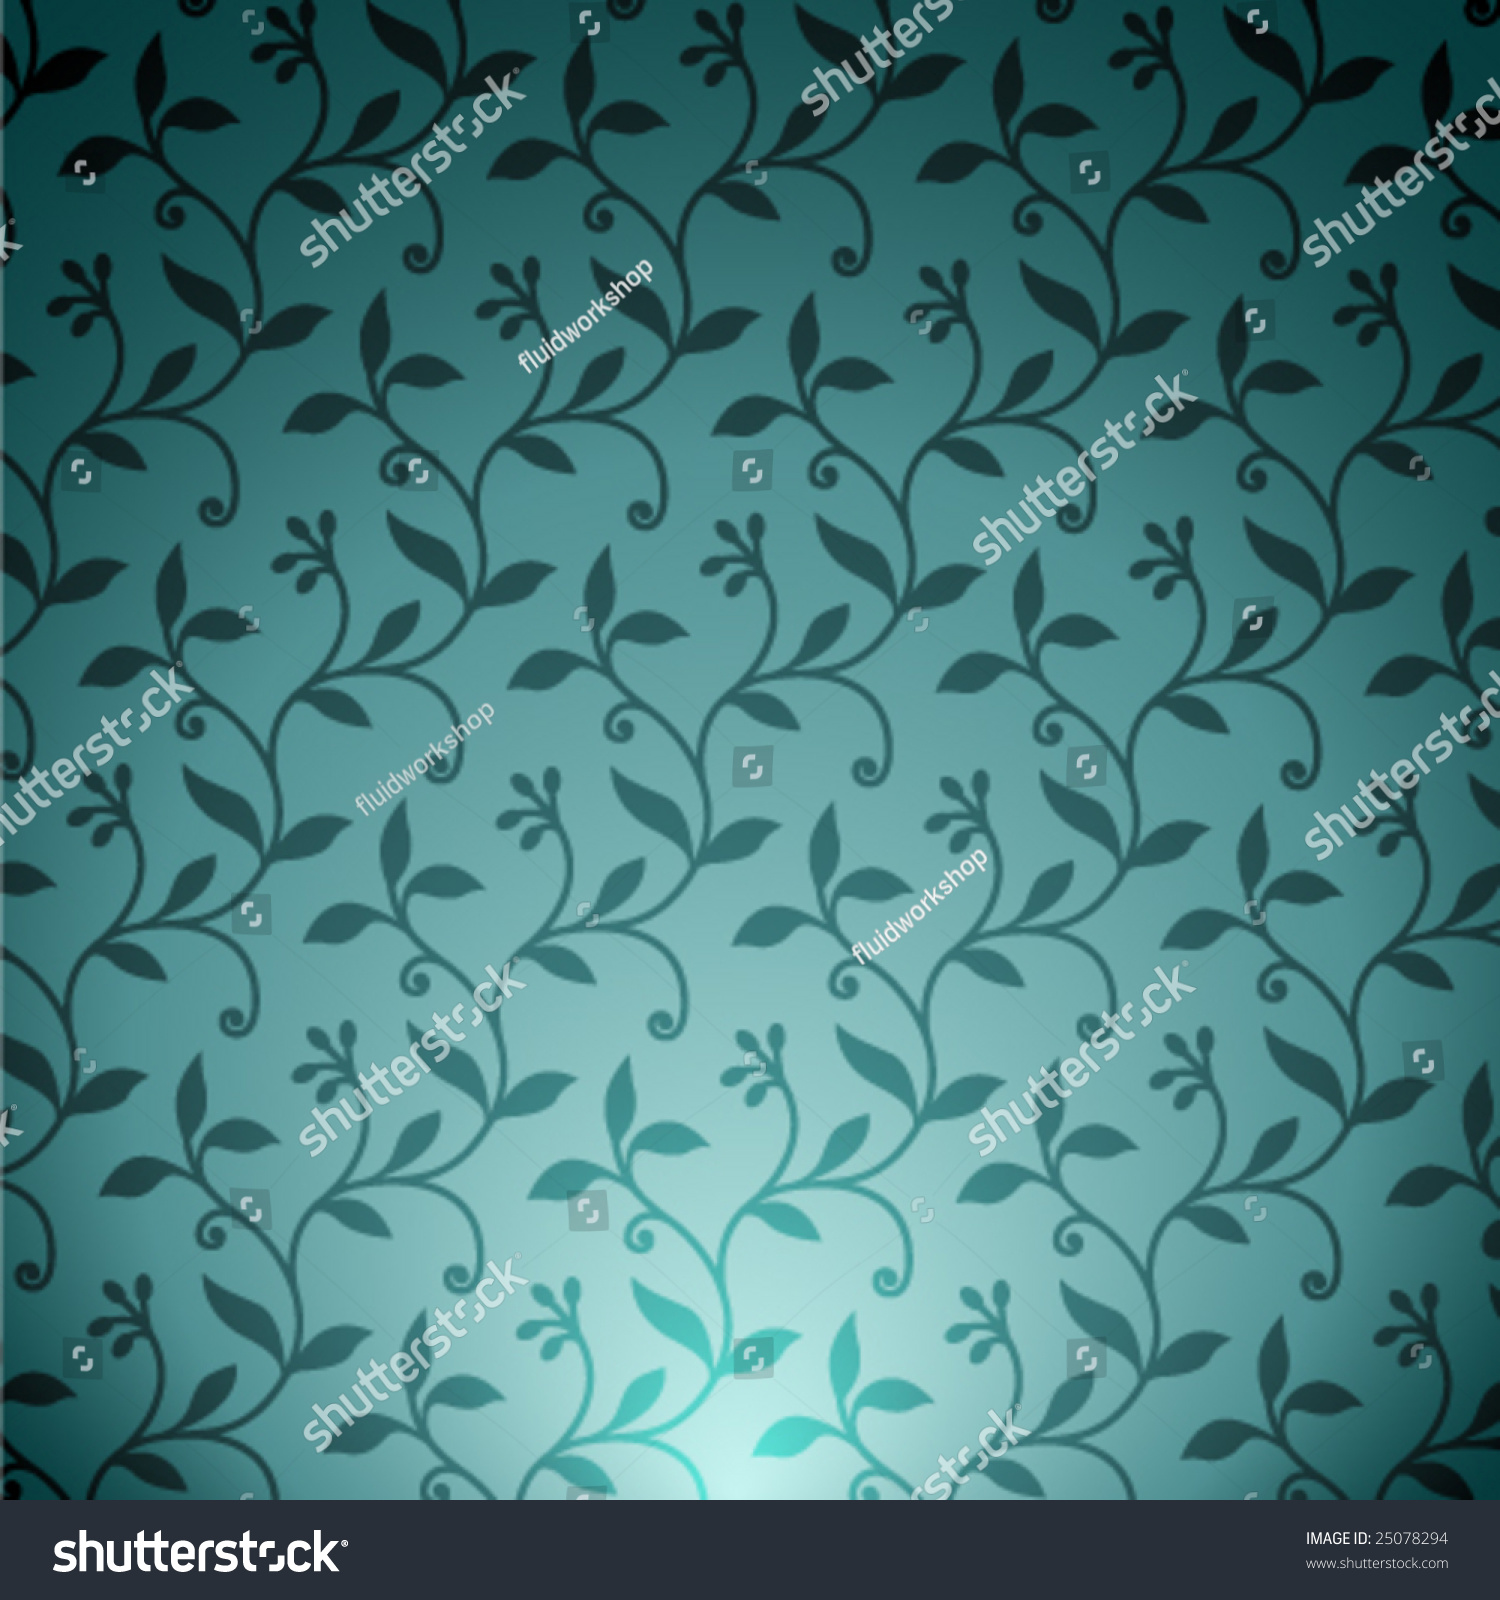 Vector Ornate Background - 25078294 : Shutterstock